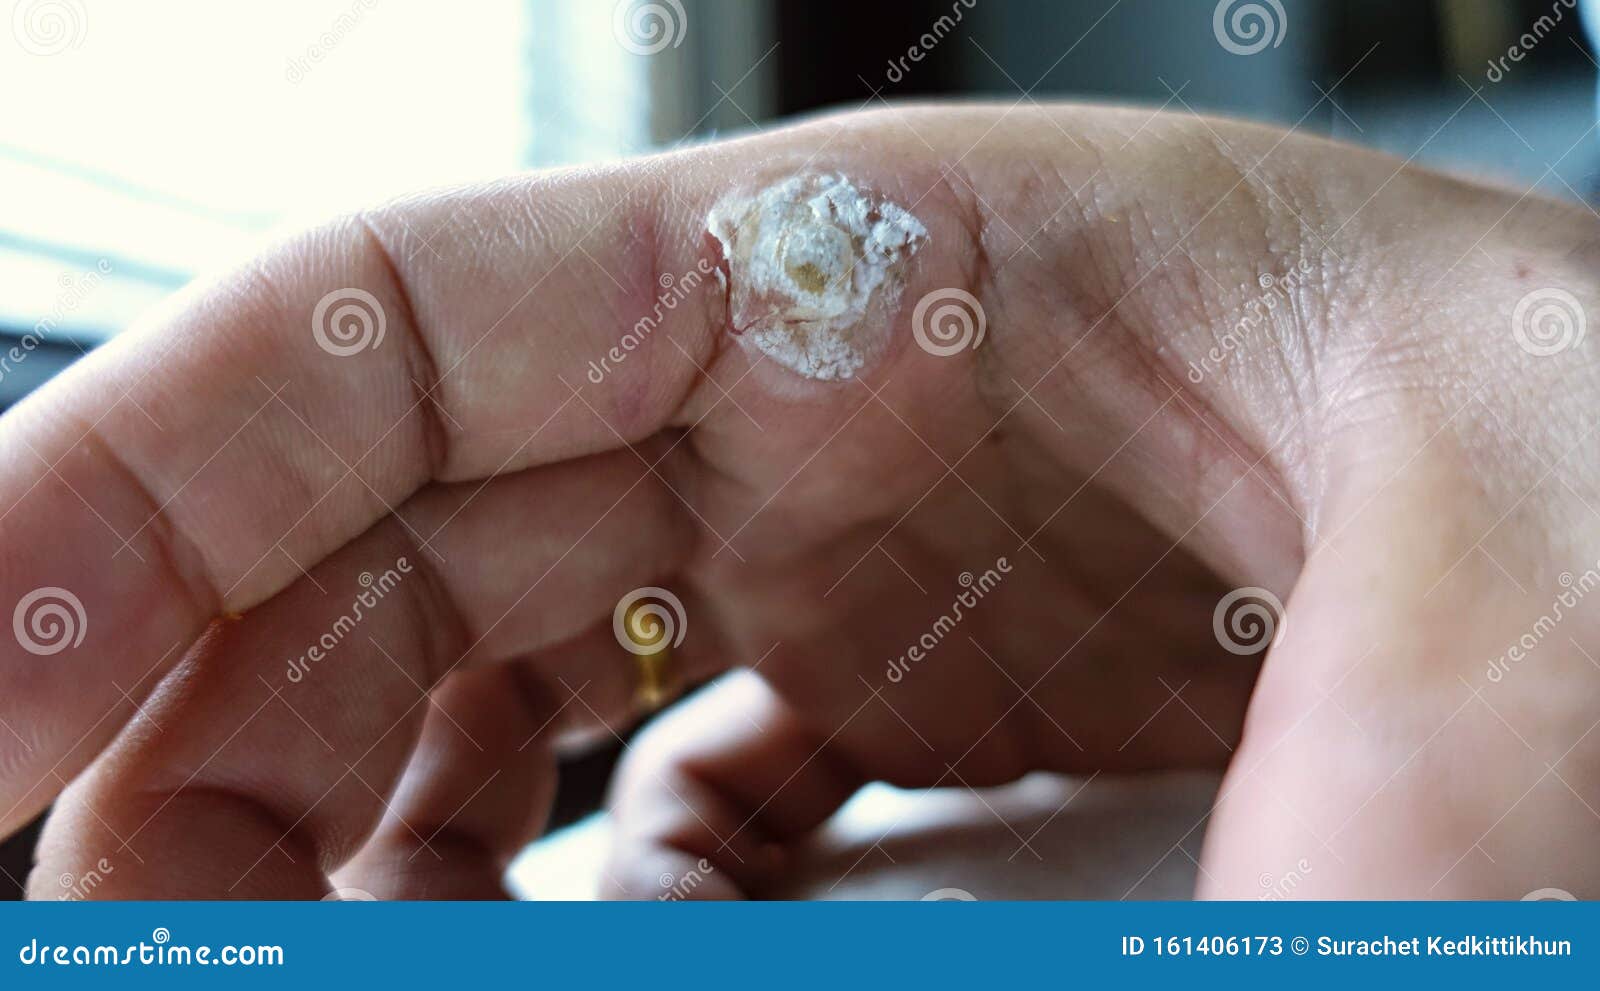 wart treatment finger